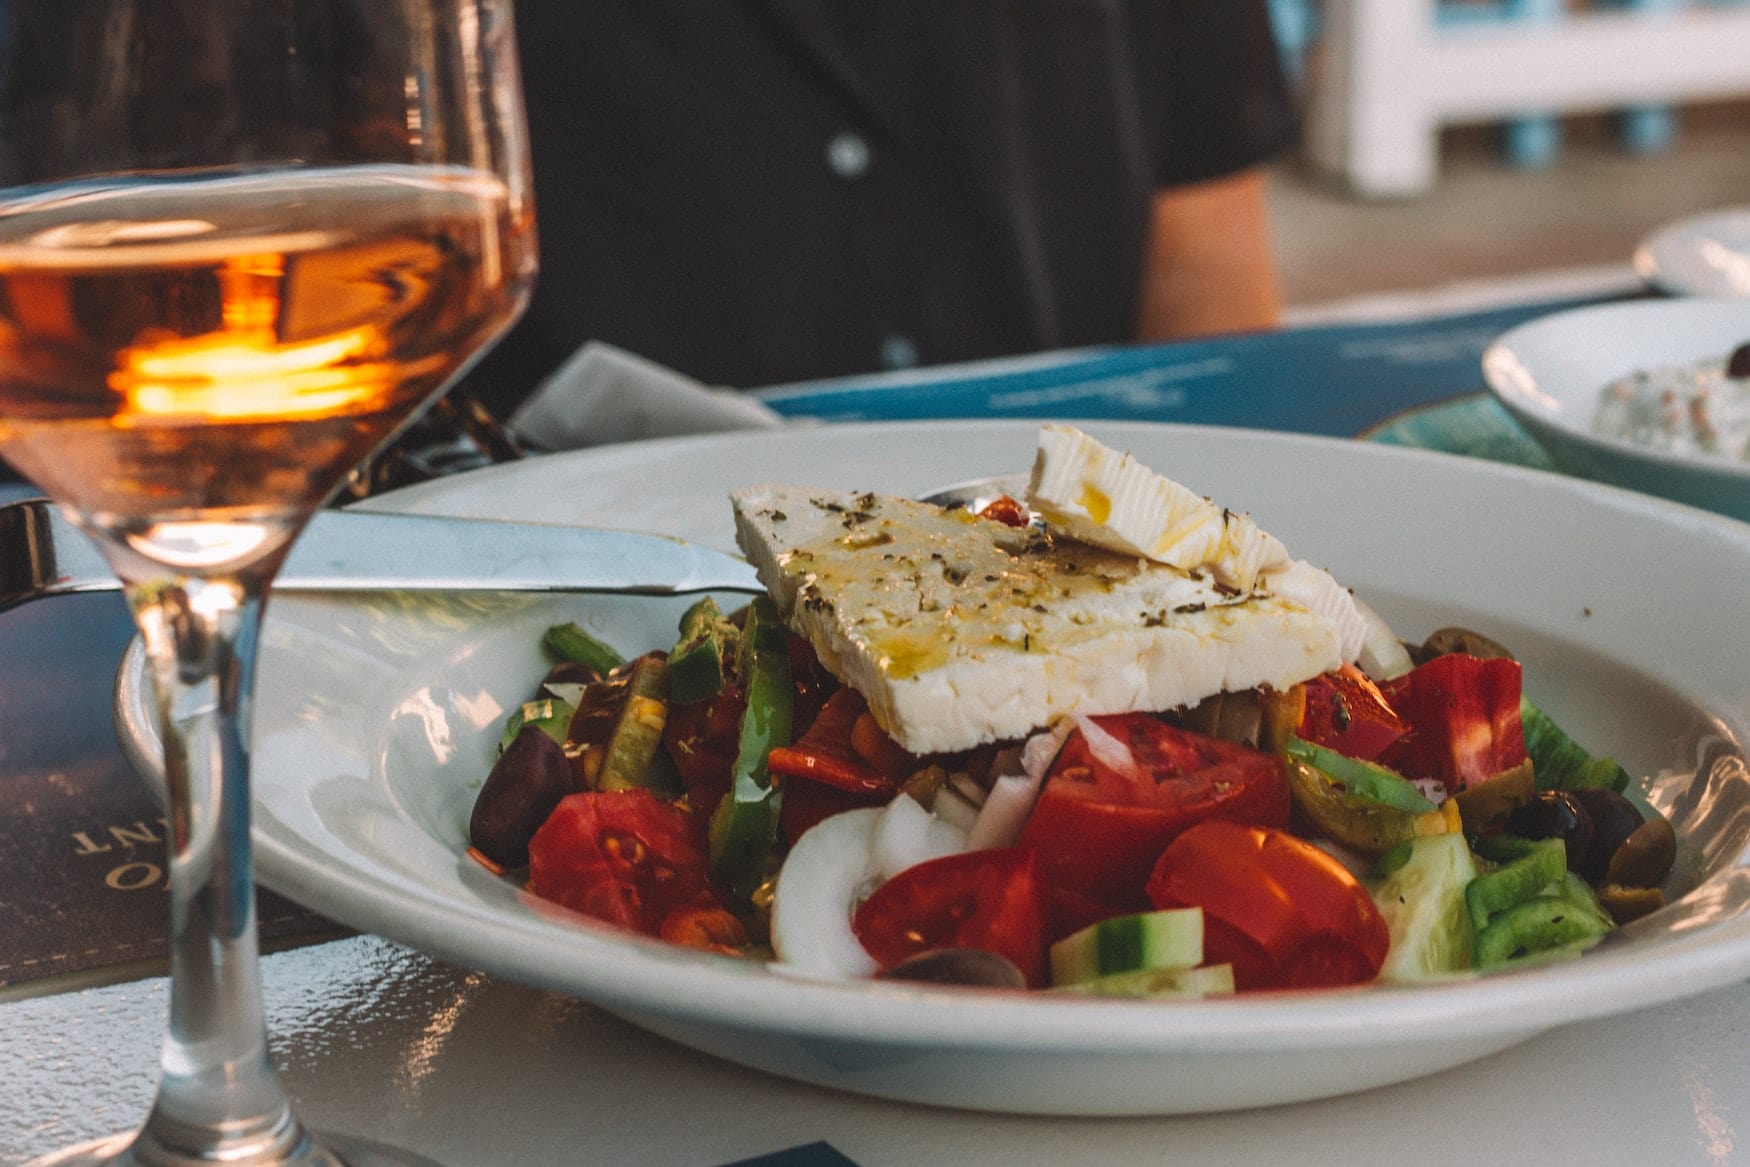 Griechischen Bauernsalat muss man währen einem Urlaub auf Santorin probiert haben